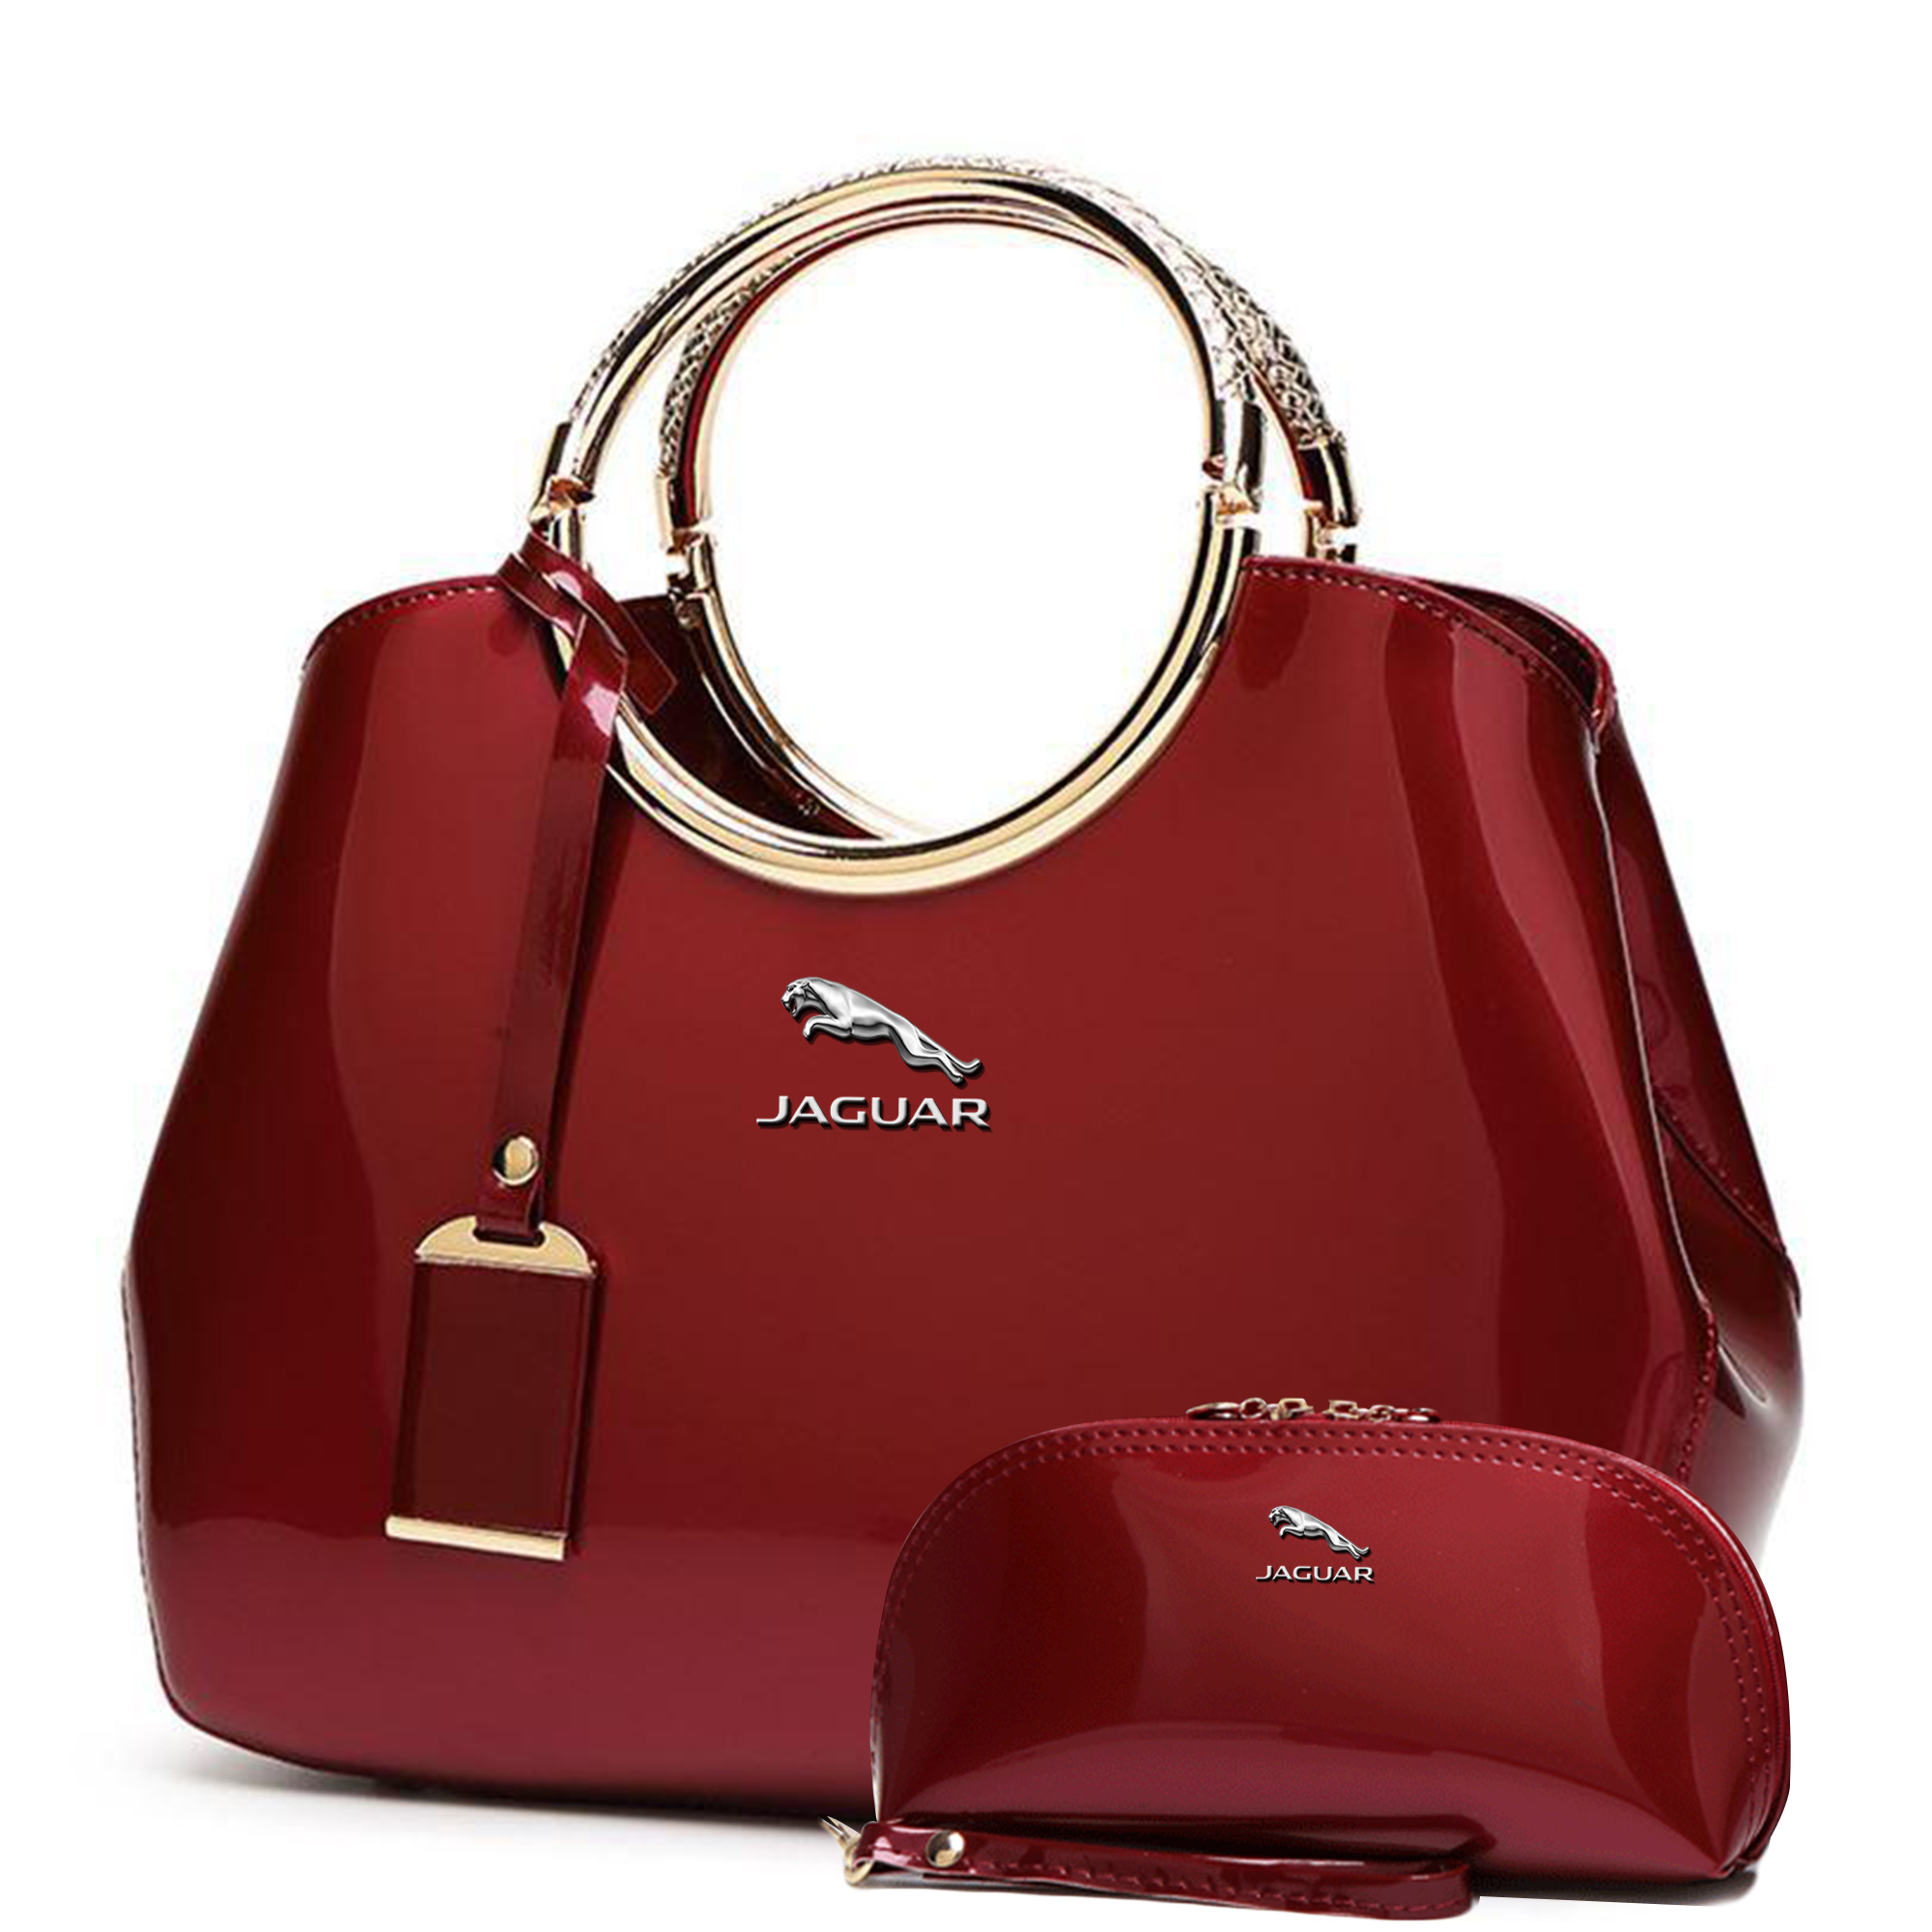 Buy HauteSauce Pink Medium Leather Jaguar Handbag at Best Price @ Tata CLiQ